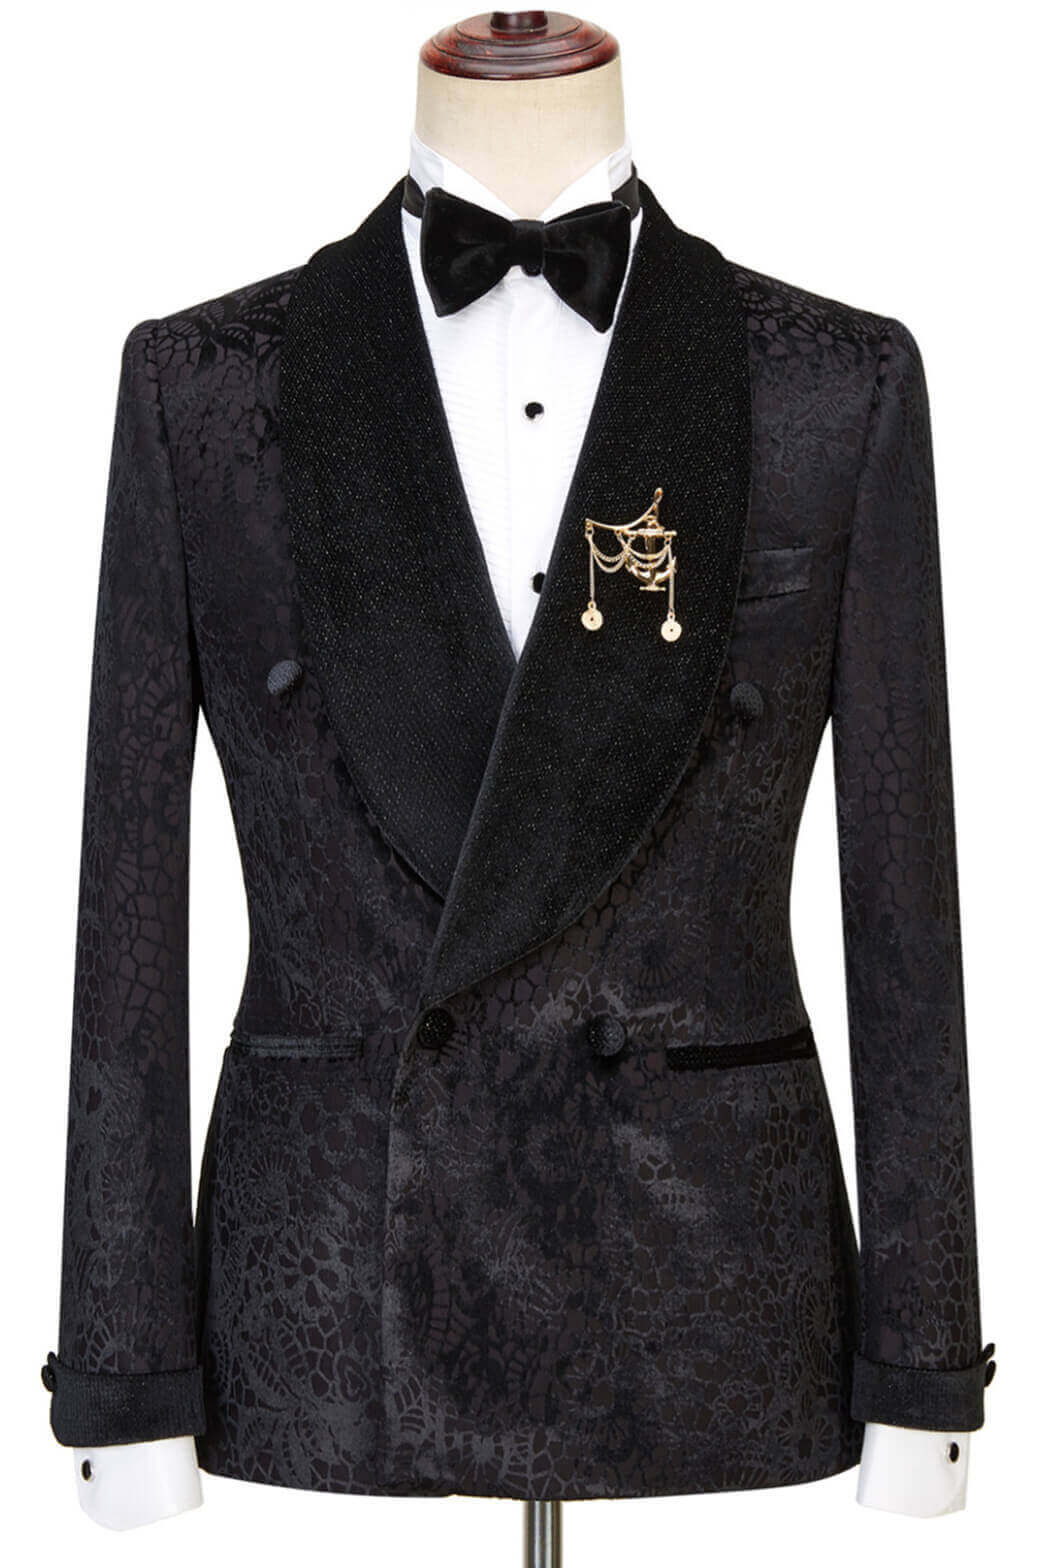 black jacquard suit